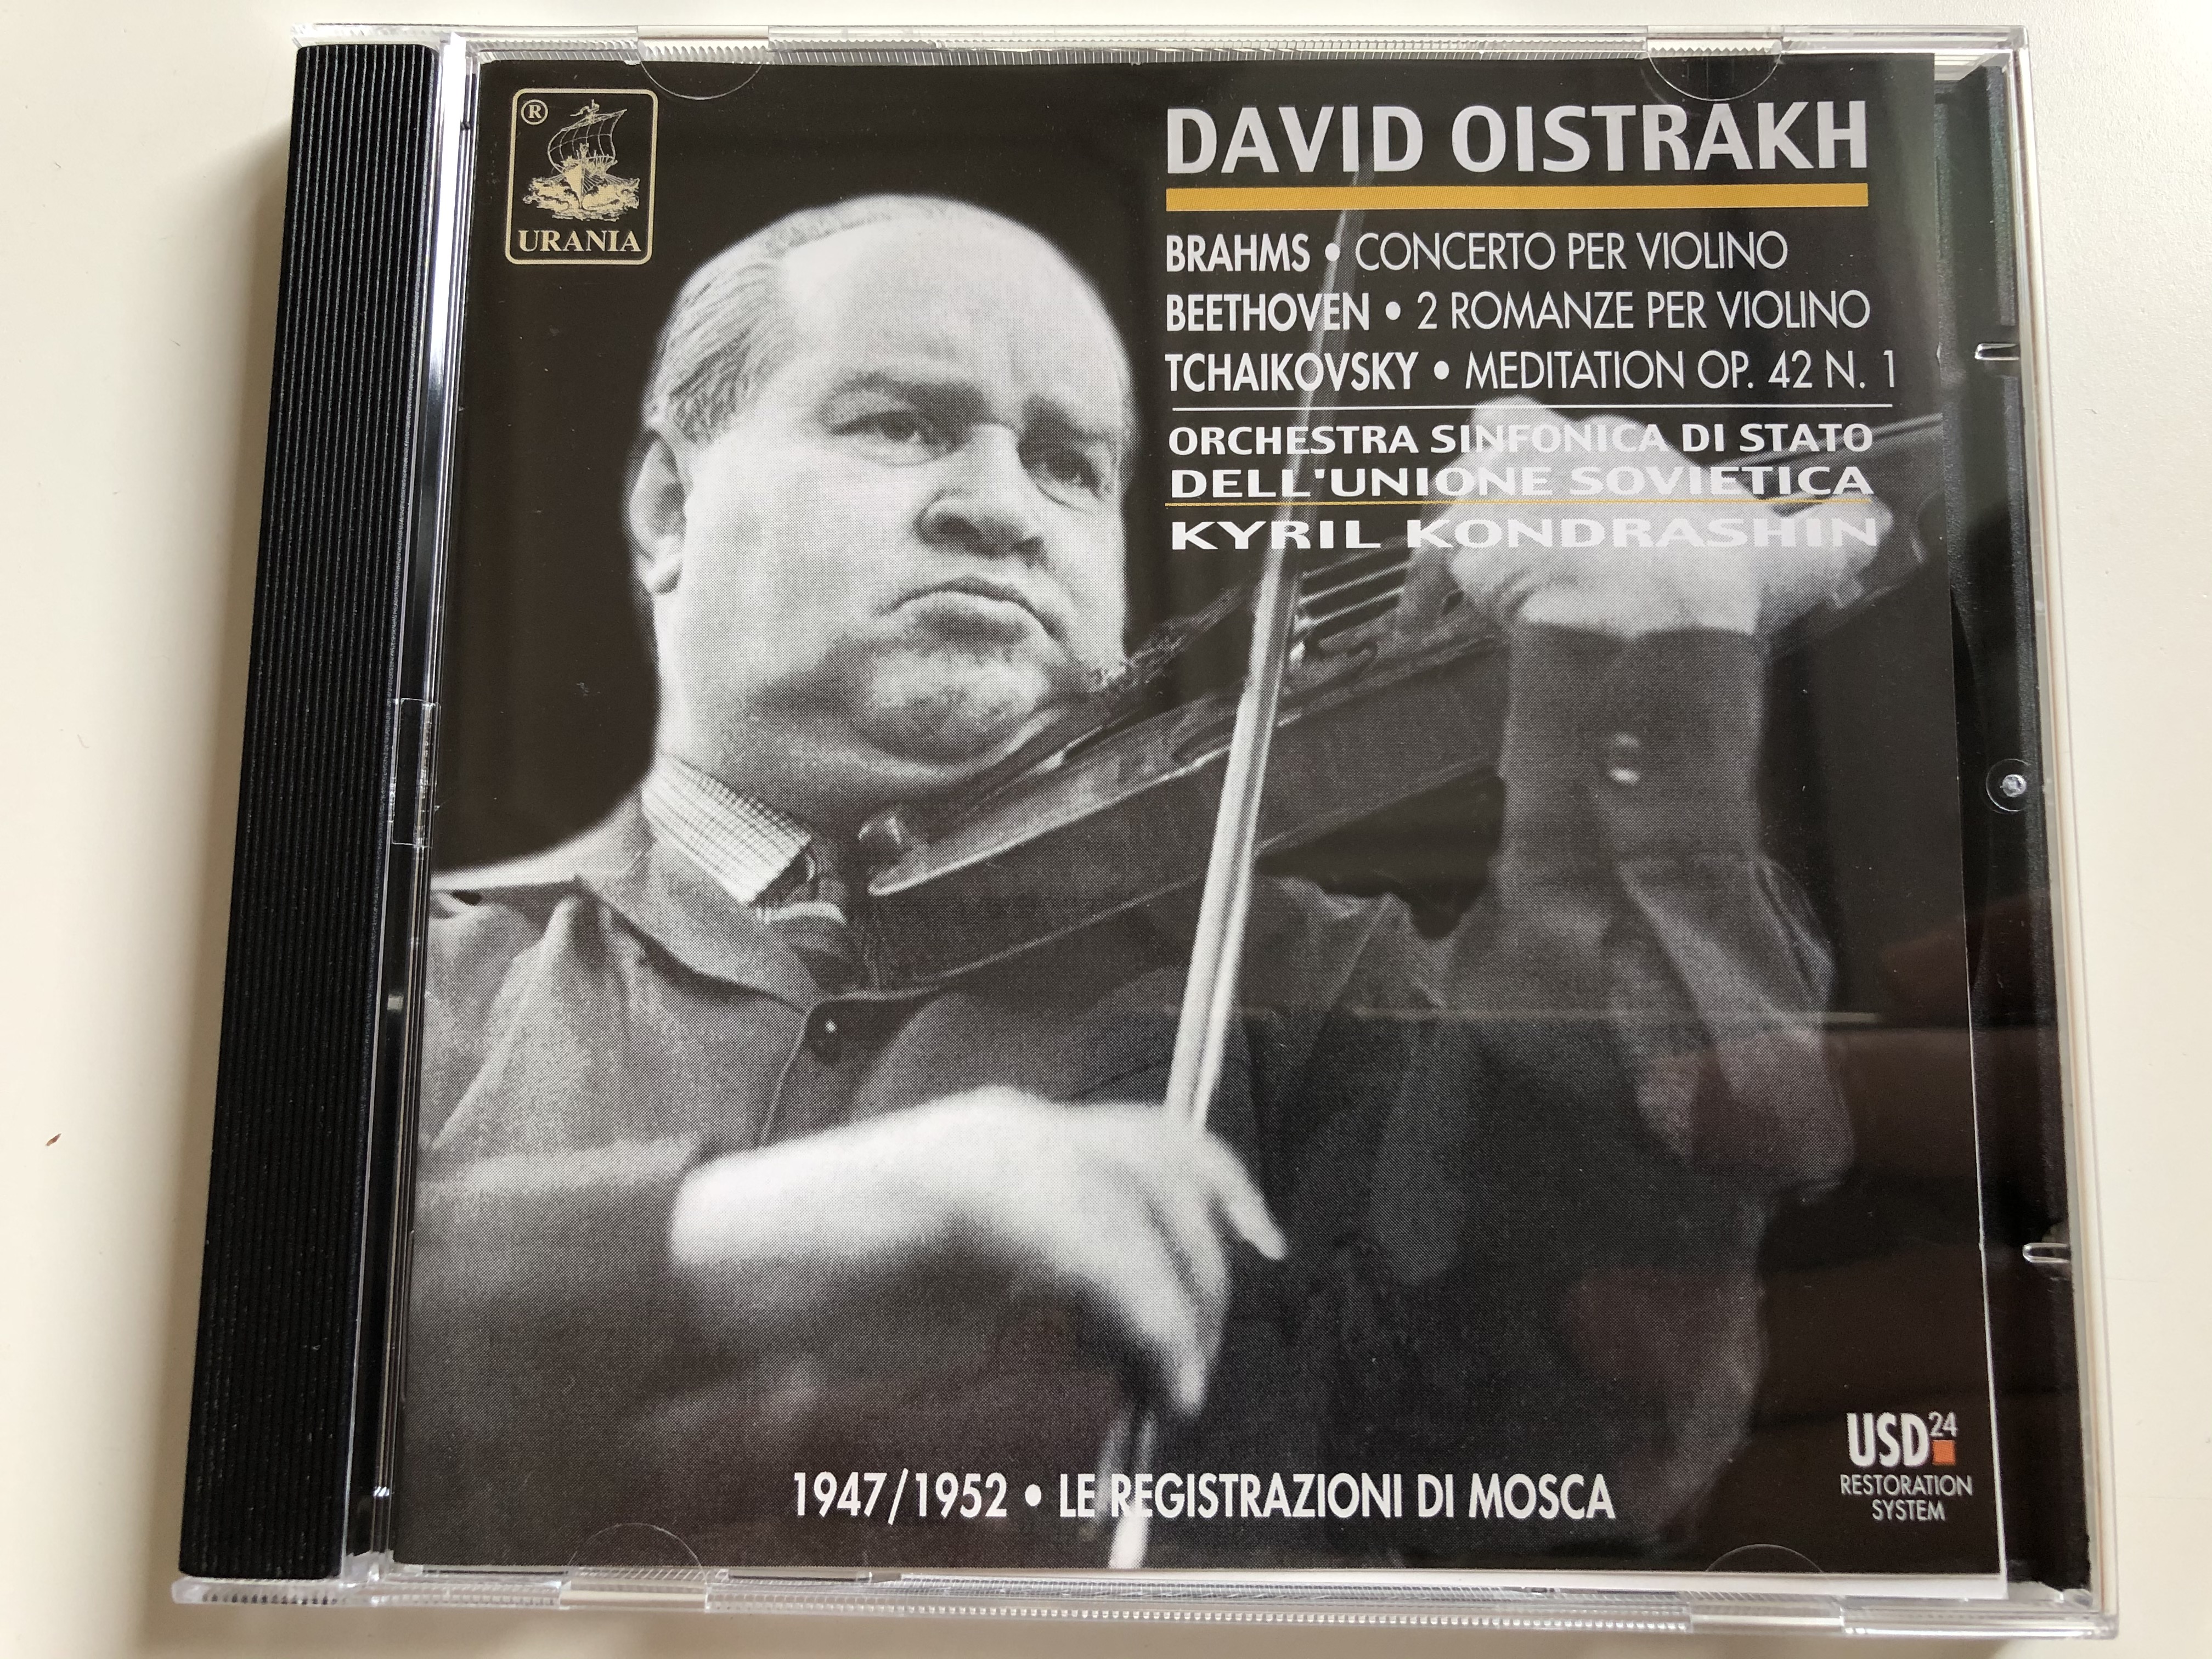 david-oistrakh-brahms-concerto-per-violino-beethoven-2-romanze-per-violino-tchaikovsky-meditation-op.-42-n.1-orchestra-sinfonica-di-stato-dell-unione-sovietica-19471952-le-registrazion-1-.jpg